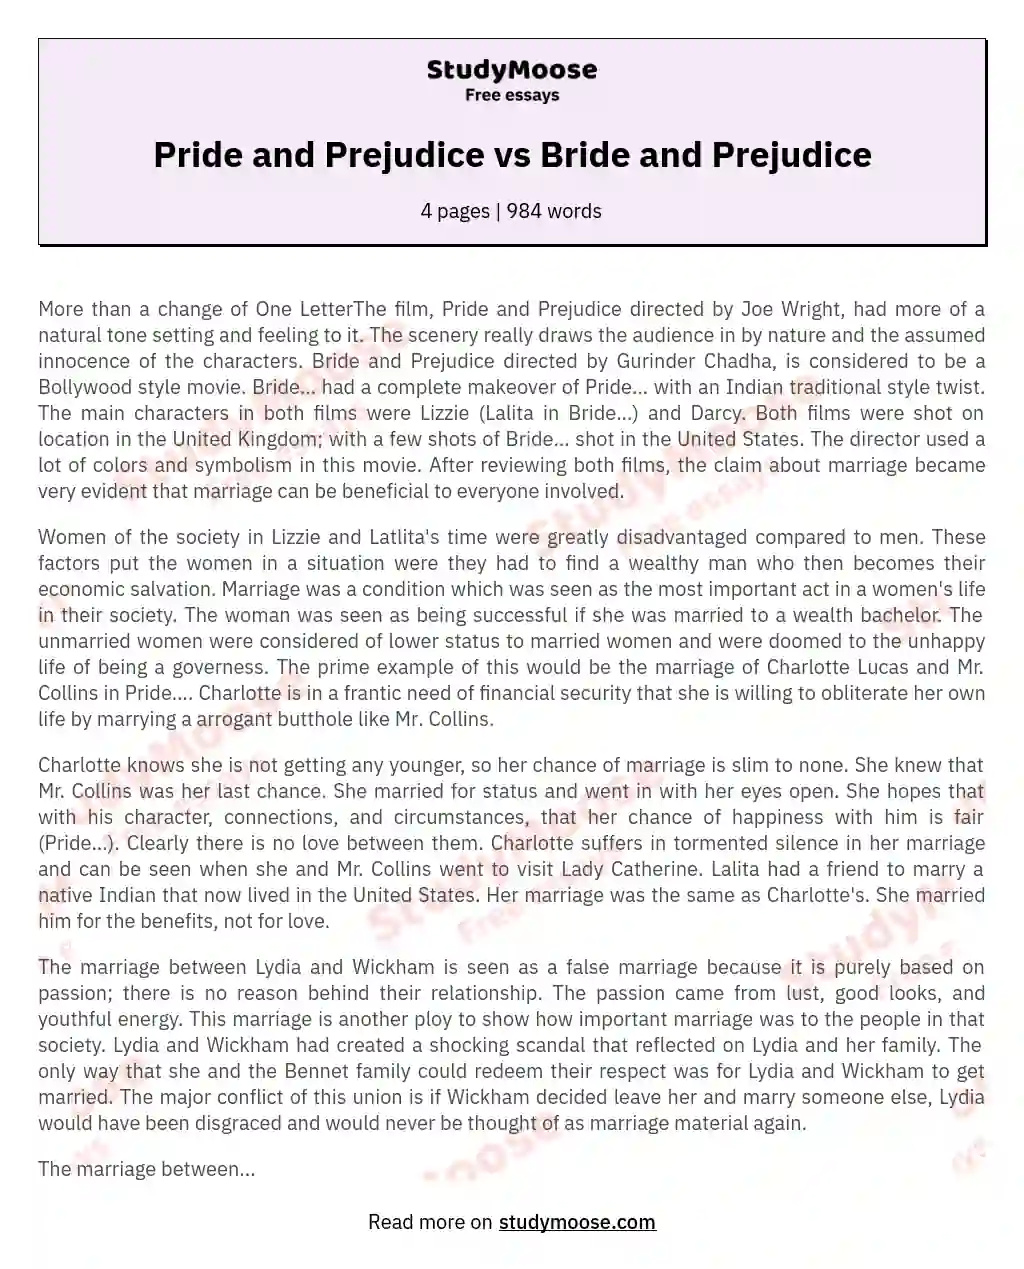 Pride and Prejudice vs Bride and Prejudice essay